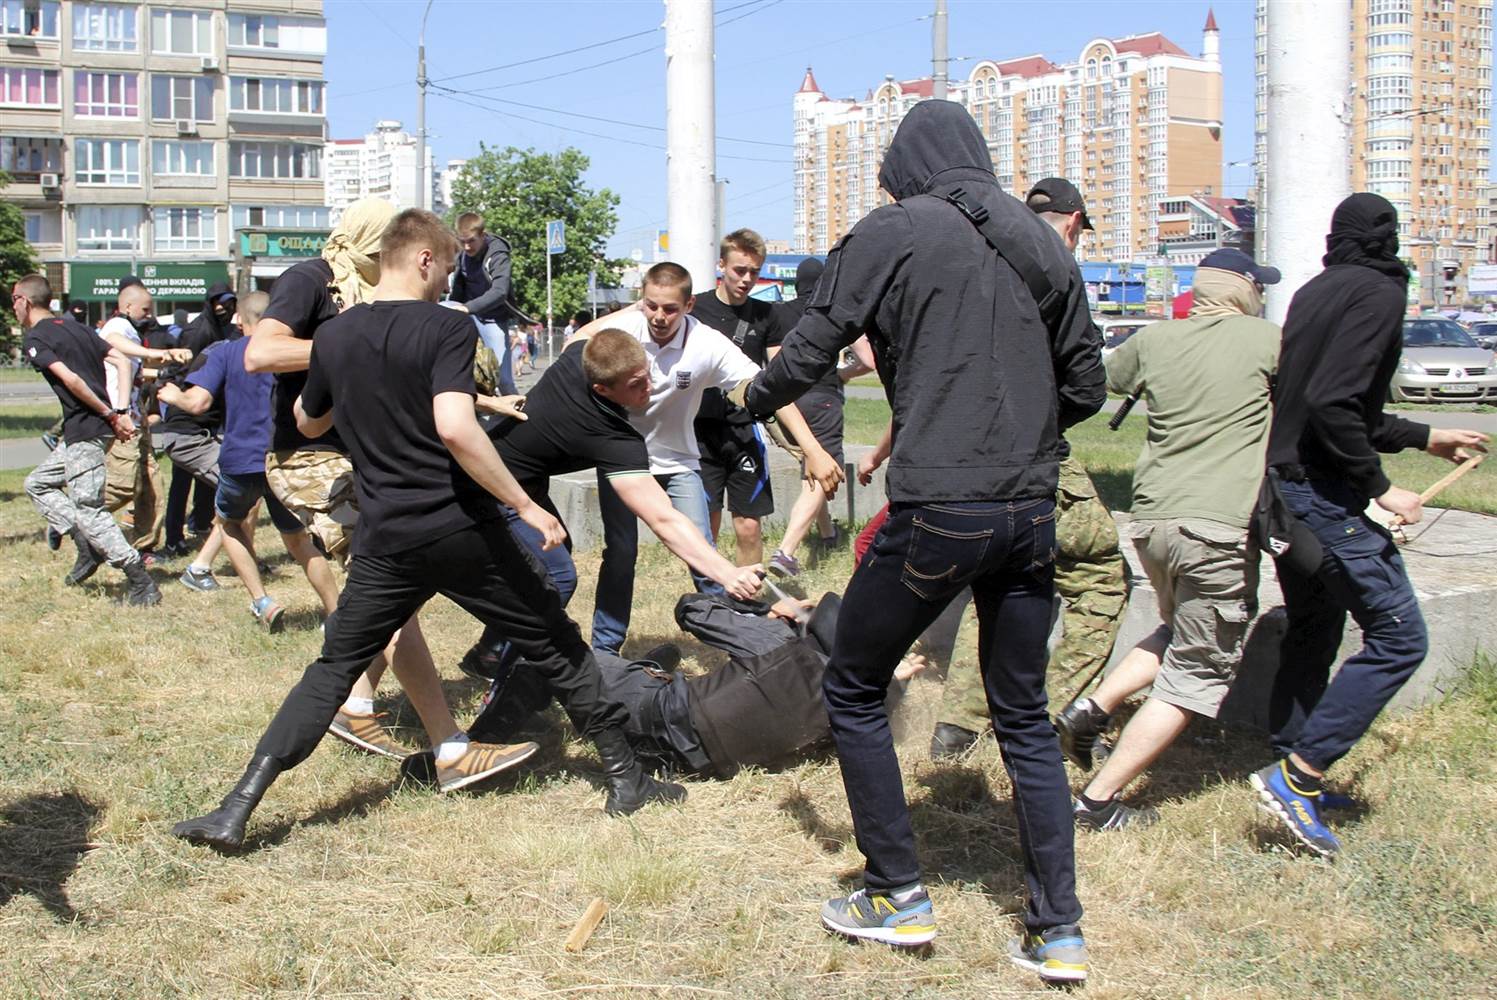 Ataque homófobo al Pride de Kiev